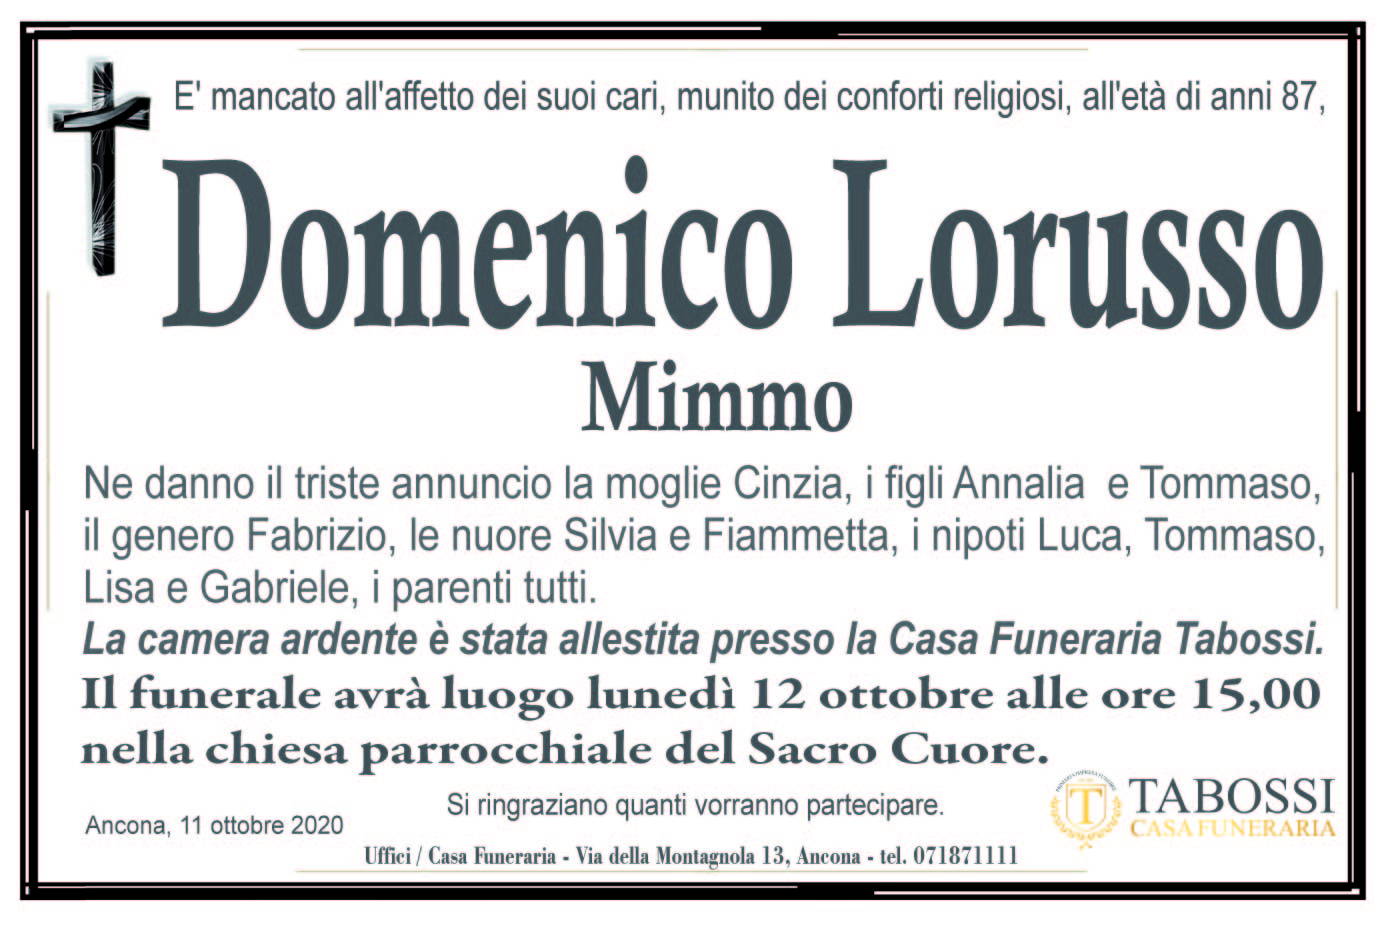 Domenico Lorusso